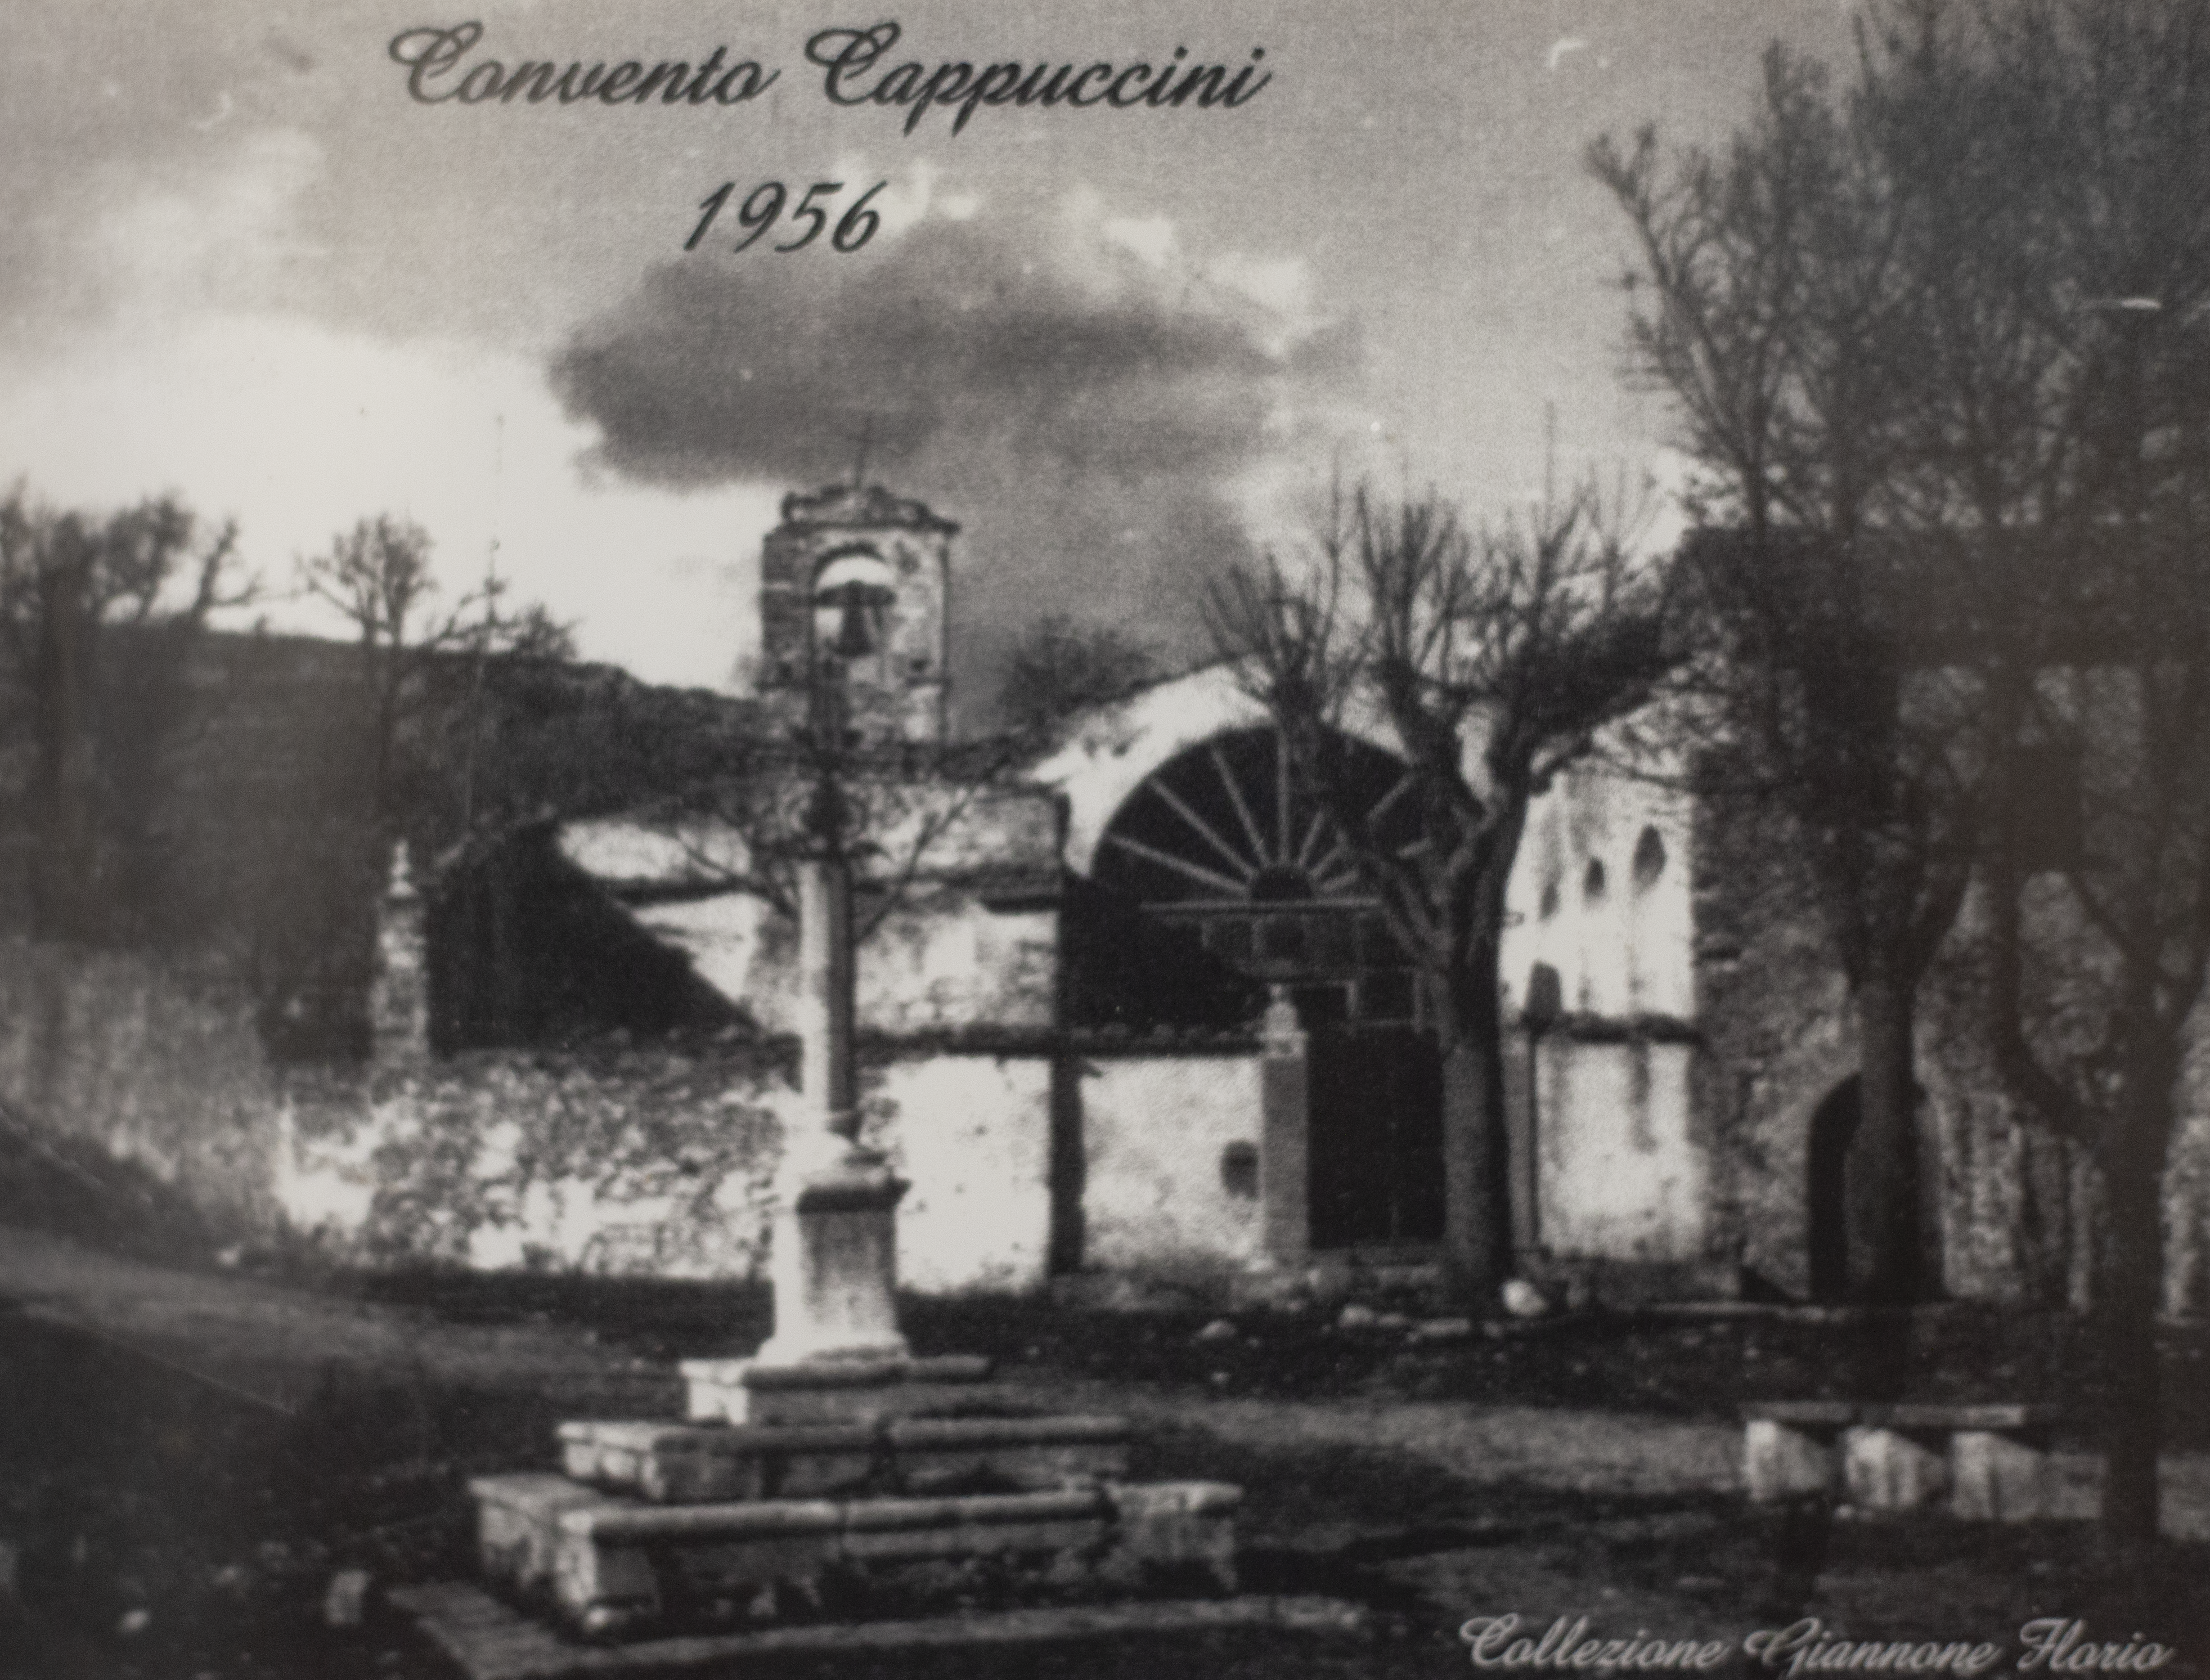 Il Convento Cappuccini 1956